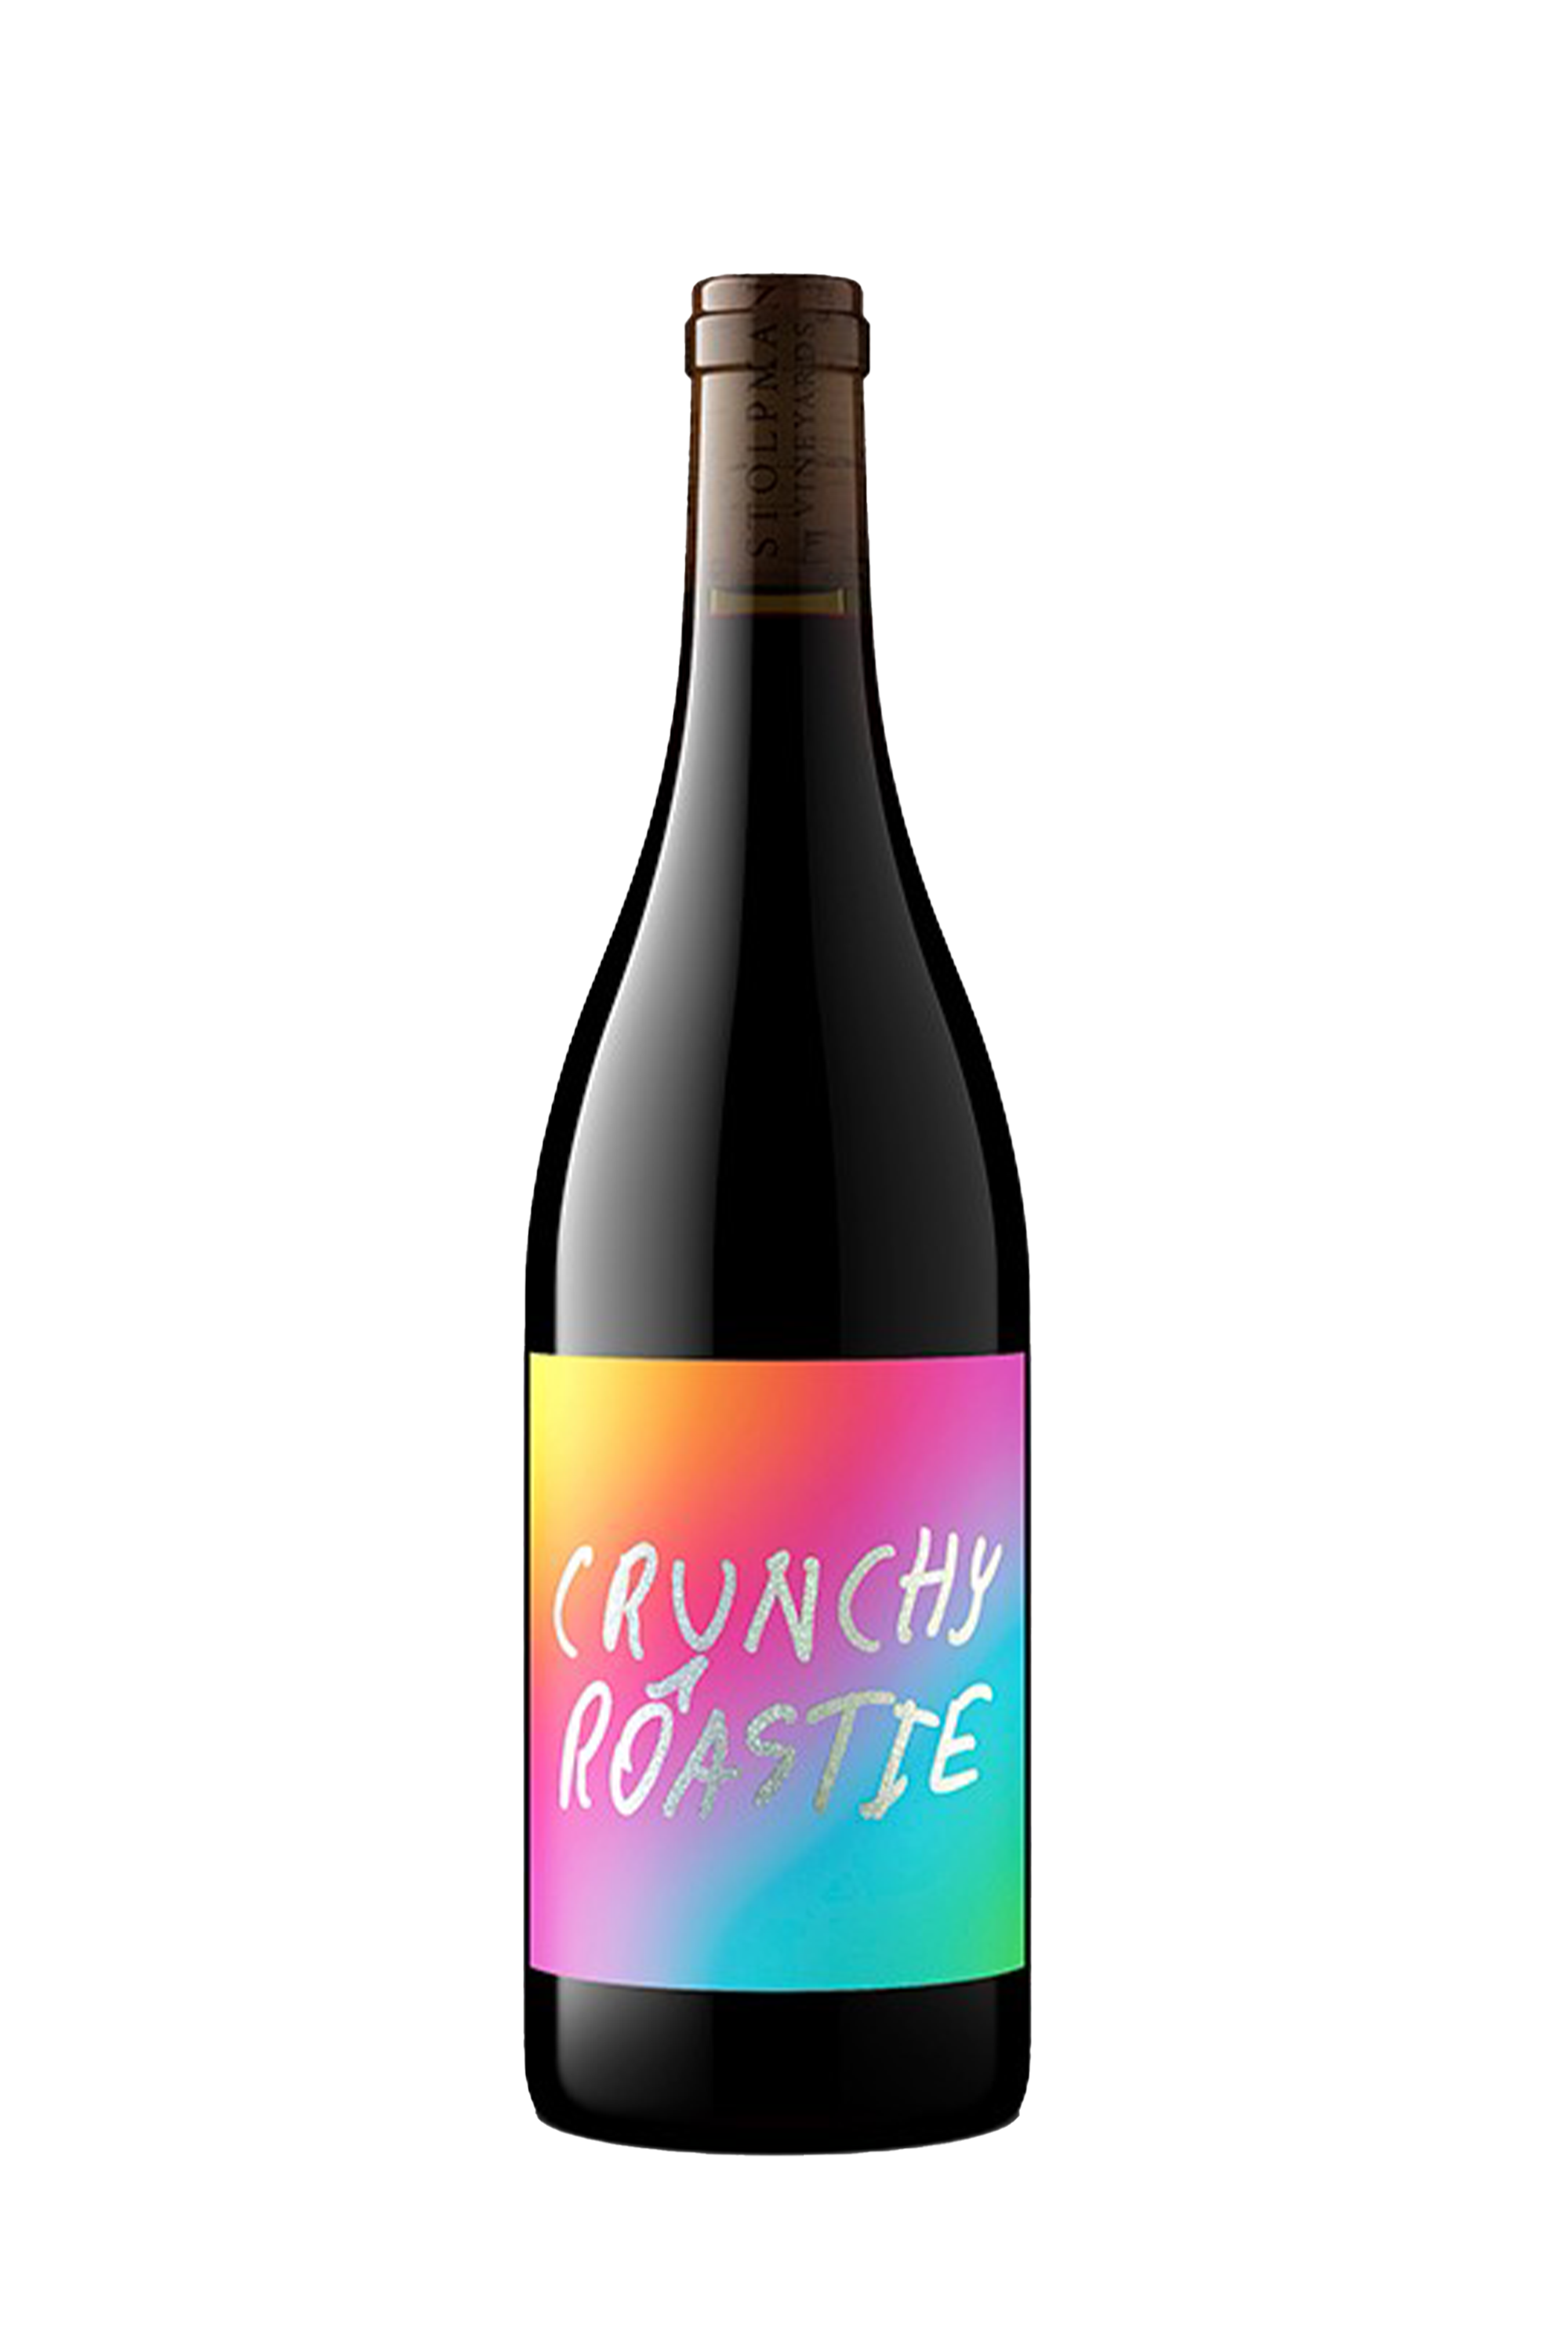 Stolpman Vineyards 'Crunchy Roastie' Red Wine 2022